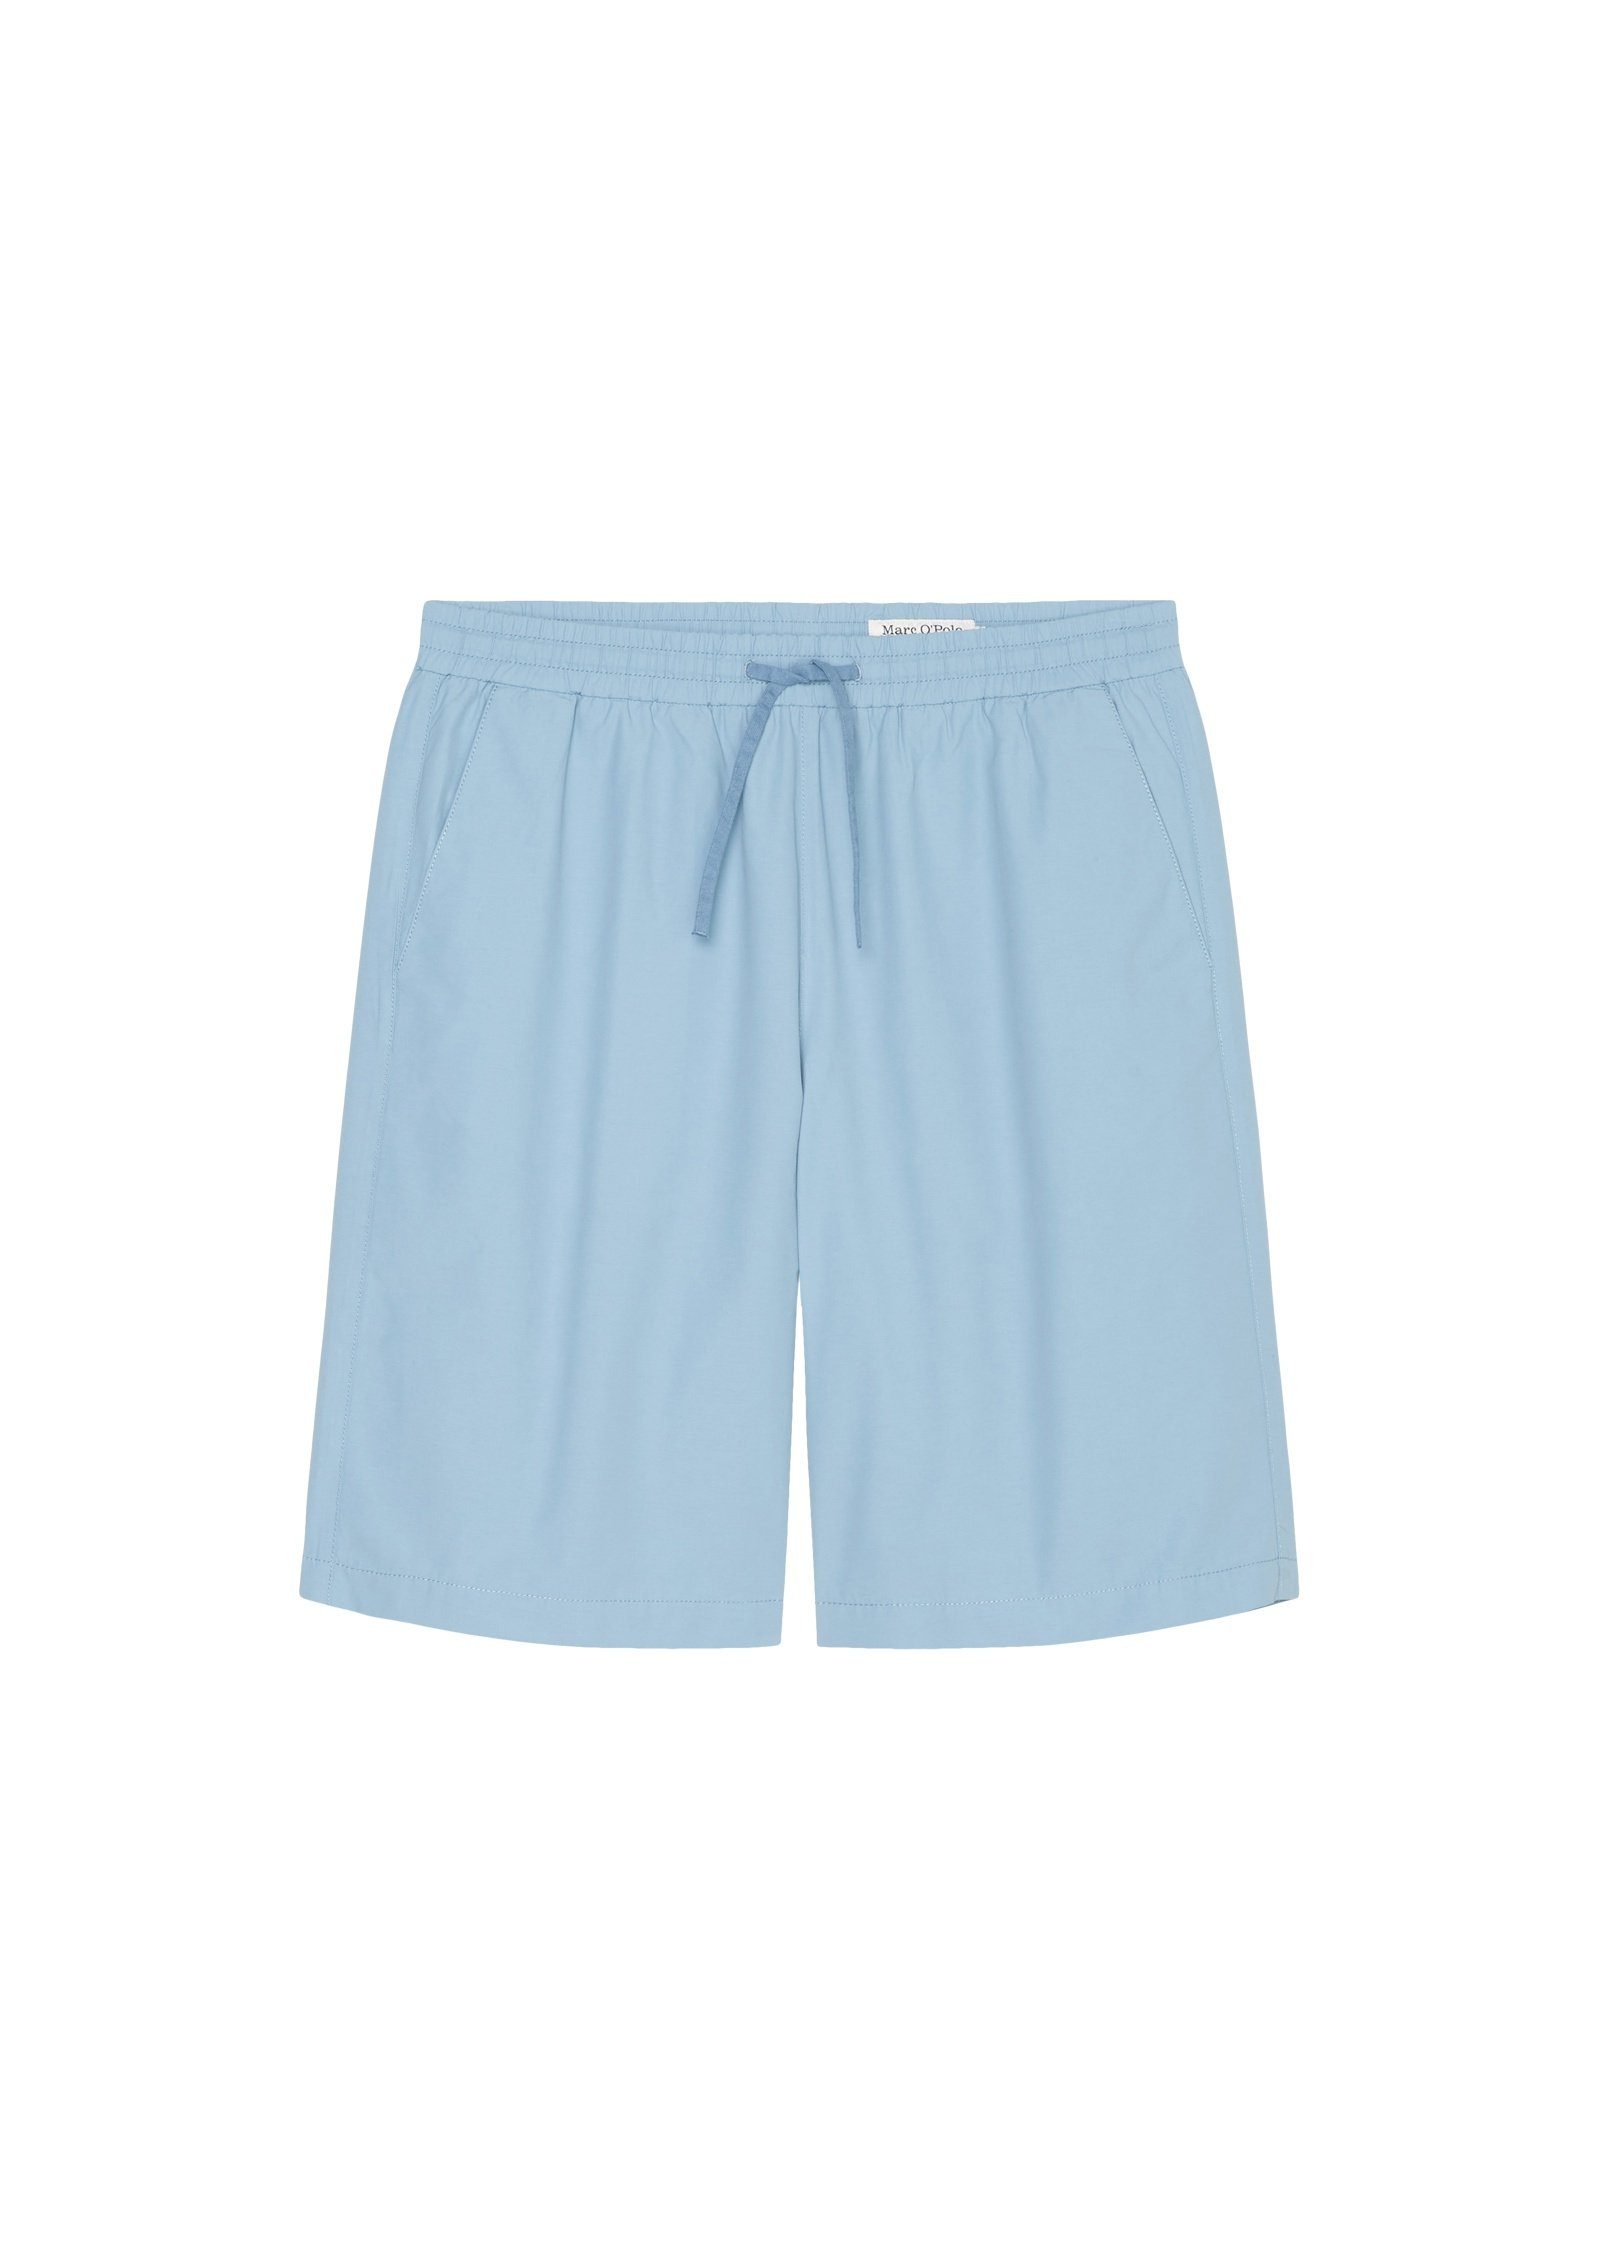 Marc blau DENIM elastischem O'Polo Bund mit Shorts